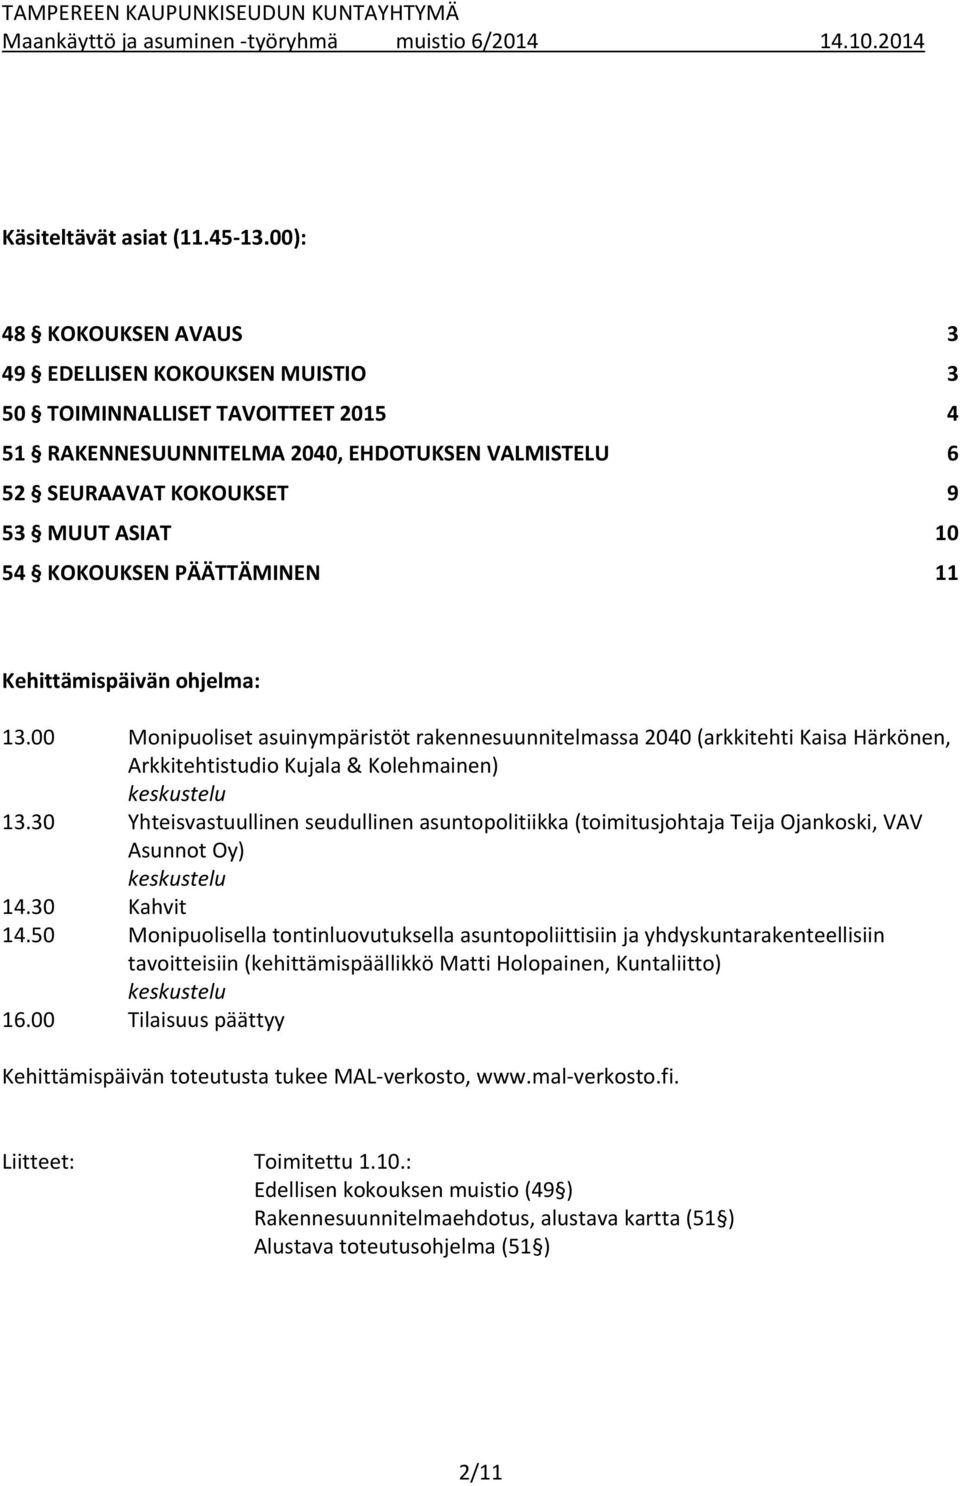 KOKOUKSEN PÄÄTTÄMINEN 11 Kehittämispäivän ohjelma: 13.00 Monipuoliset asuinympäristöt rakennesuunnitelmassa 2040 (arkkitehti Kaisa Härkönen, Arkkitehtistudio Kujala & Kolehmainen) keskustelu 13.